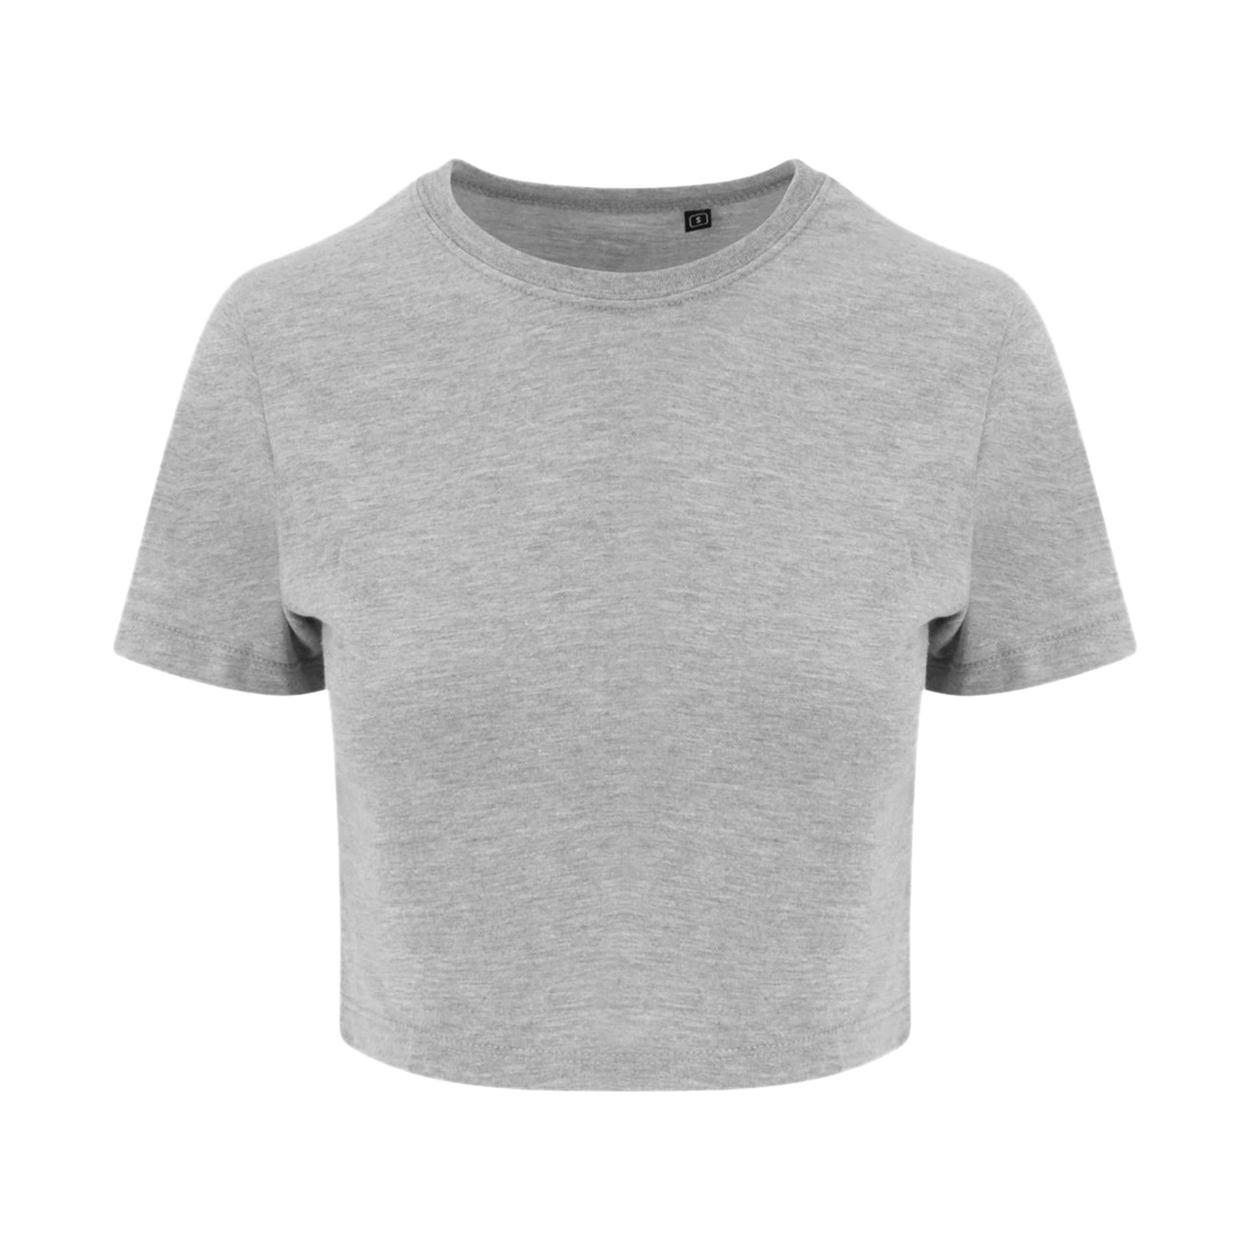 Just Ts  Camiseta Estilo Cropped Awdis - gris - 